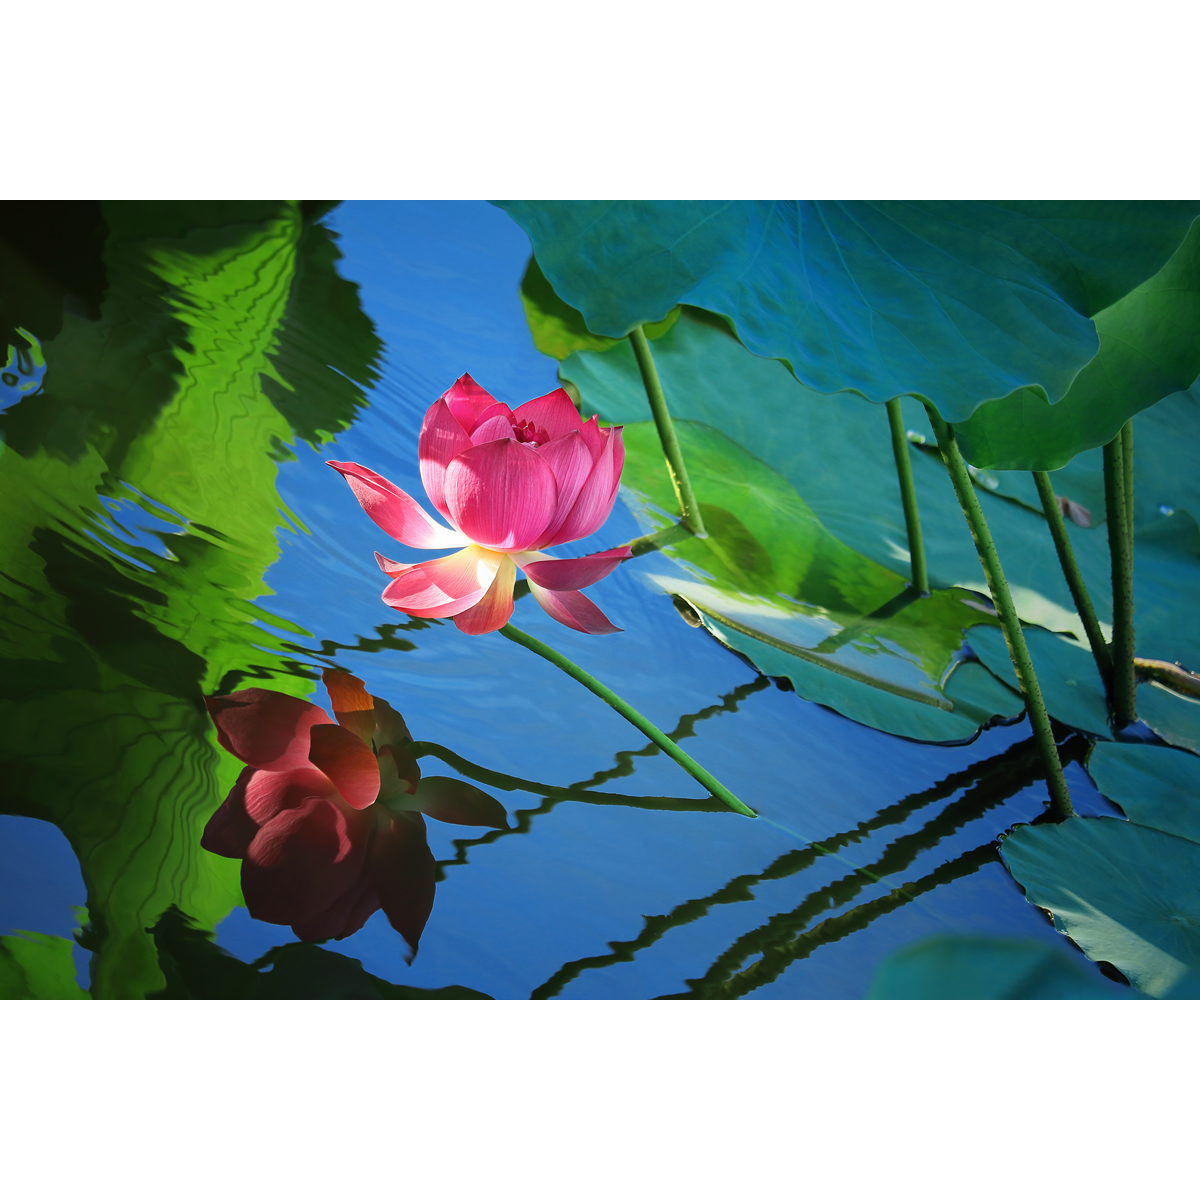 超清原创花卉摄影作品-夏日荷花/出水芙蓉(1张) 实拍素材图片